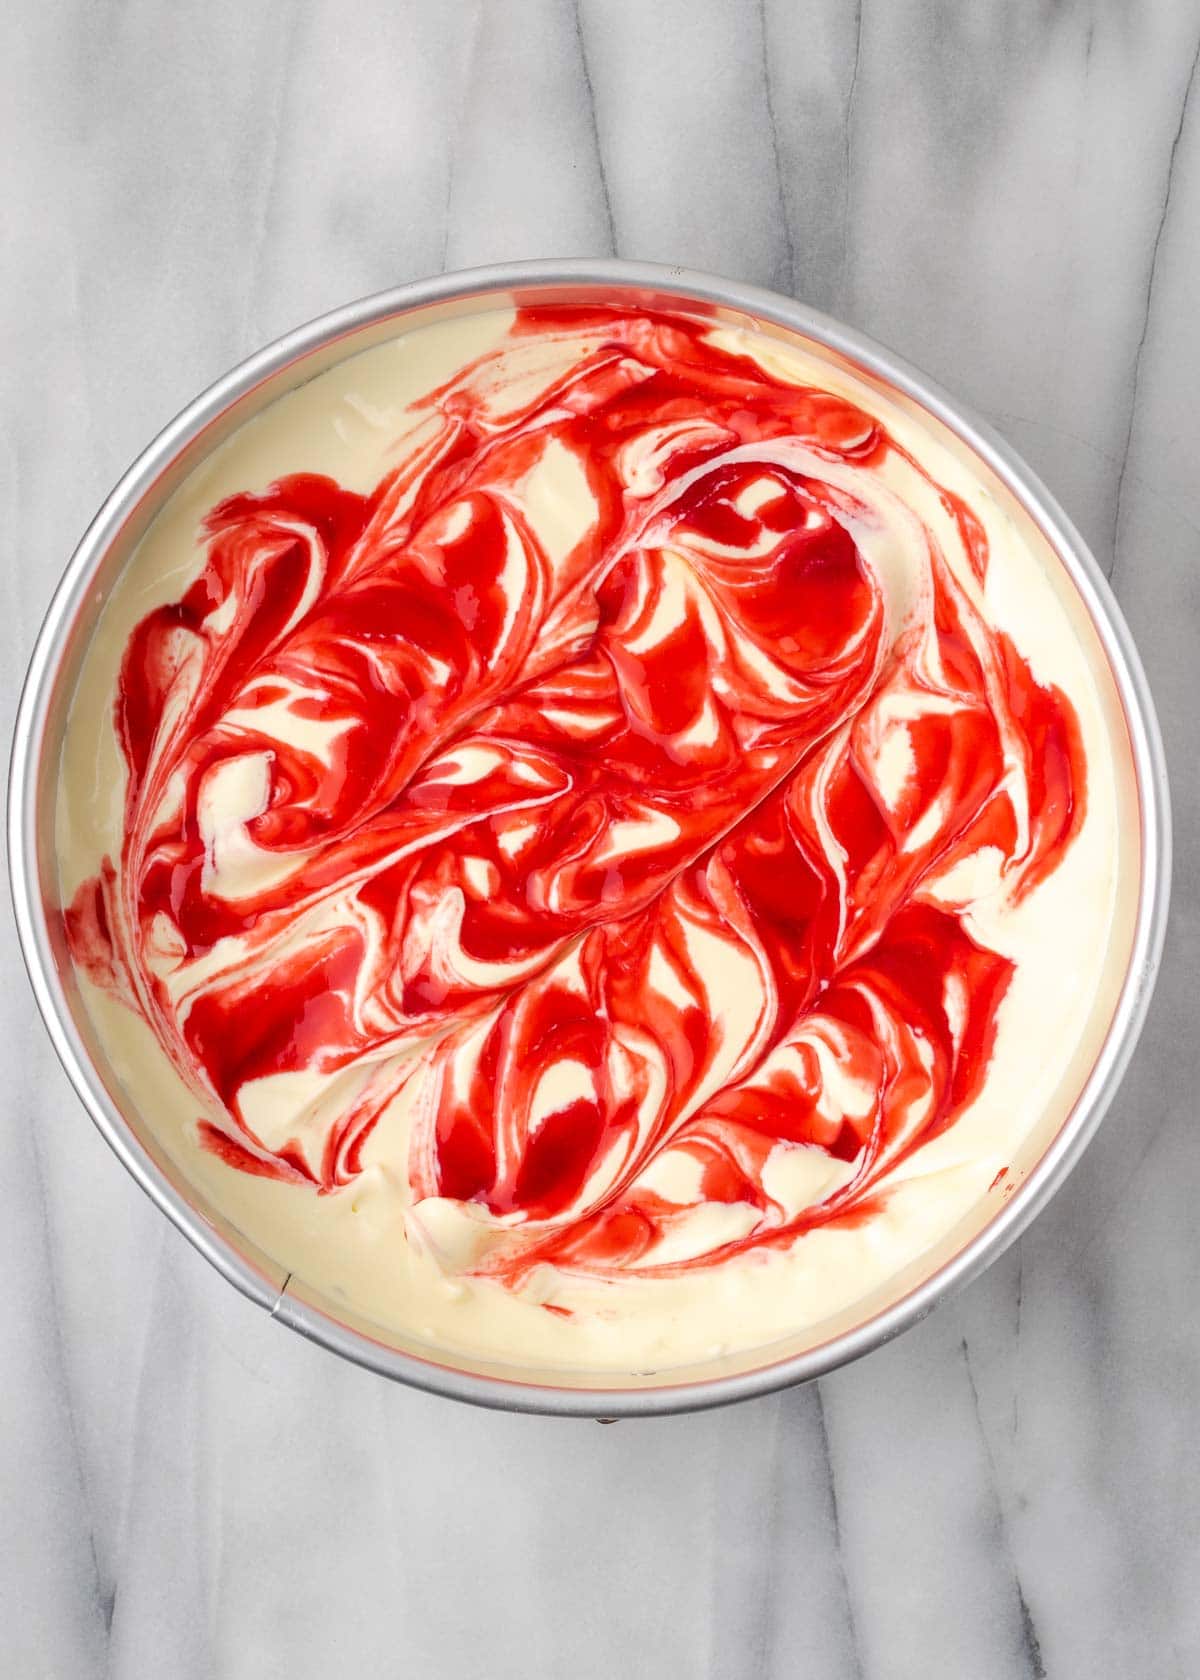 raspberry swirl in cheesecake